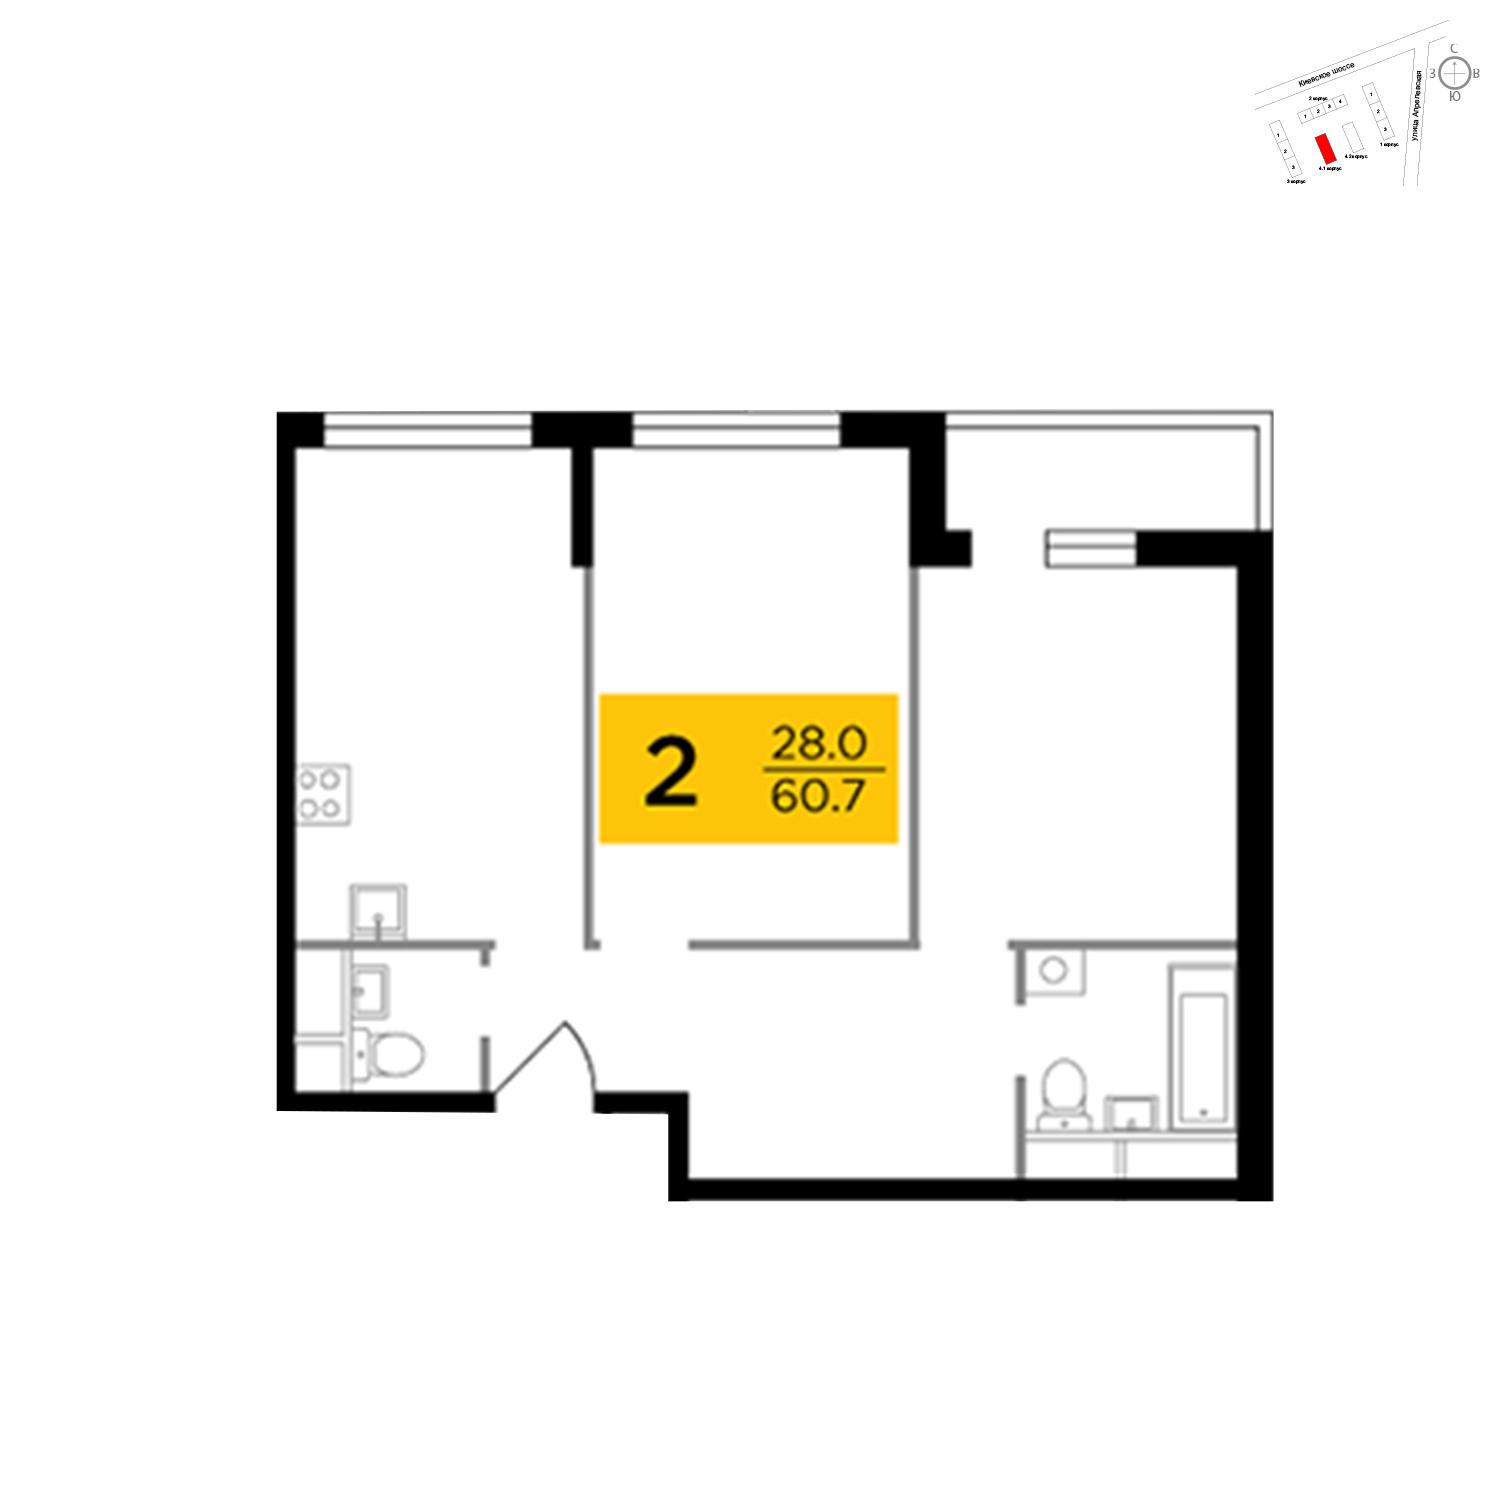 Продаётся 2-комнатная квартира в новостройке 60.7 кв.м. этаж 2/8 за 8 689 761 руб 